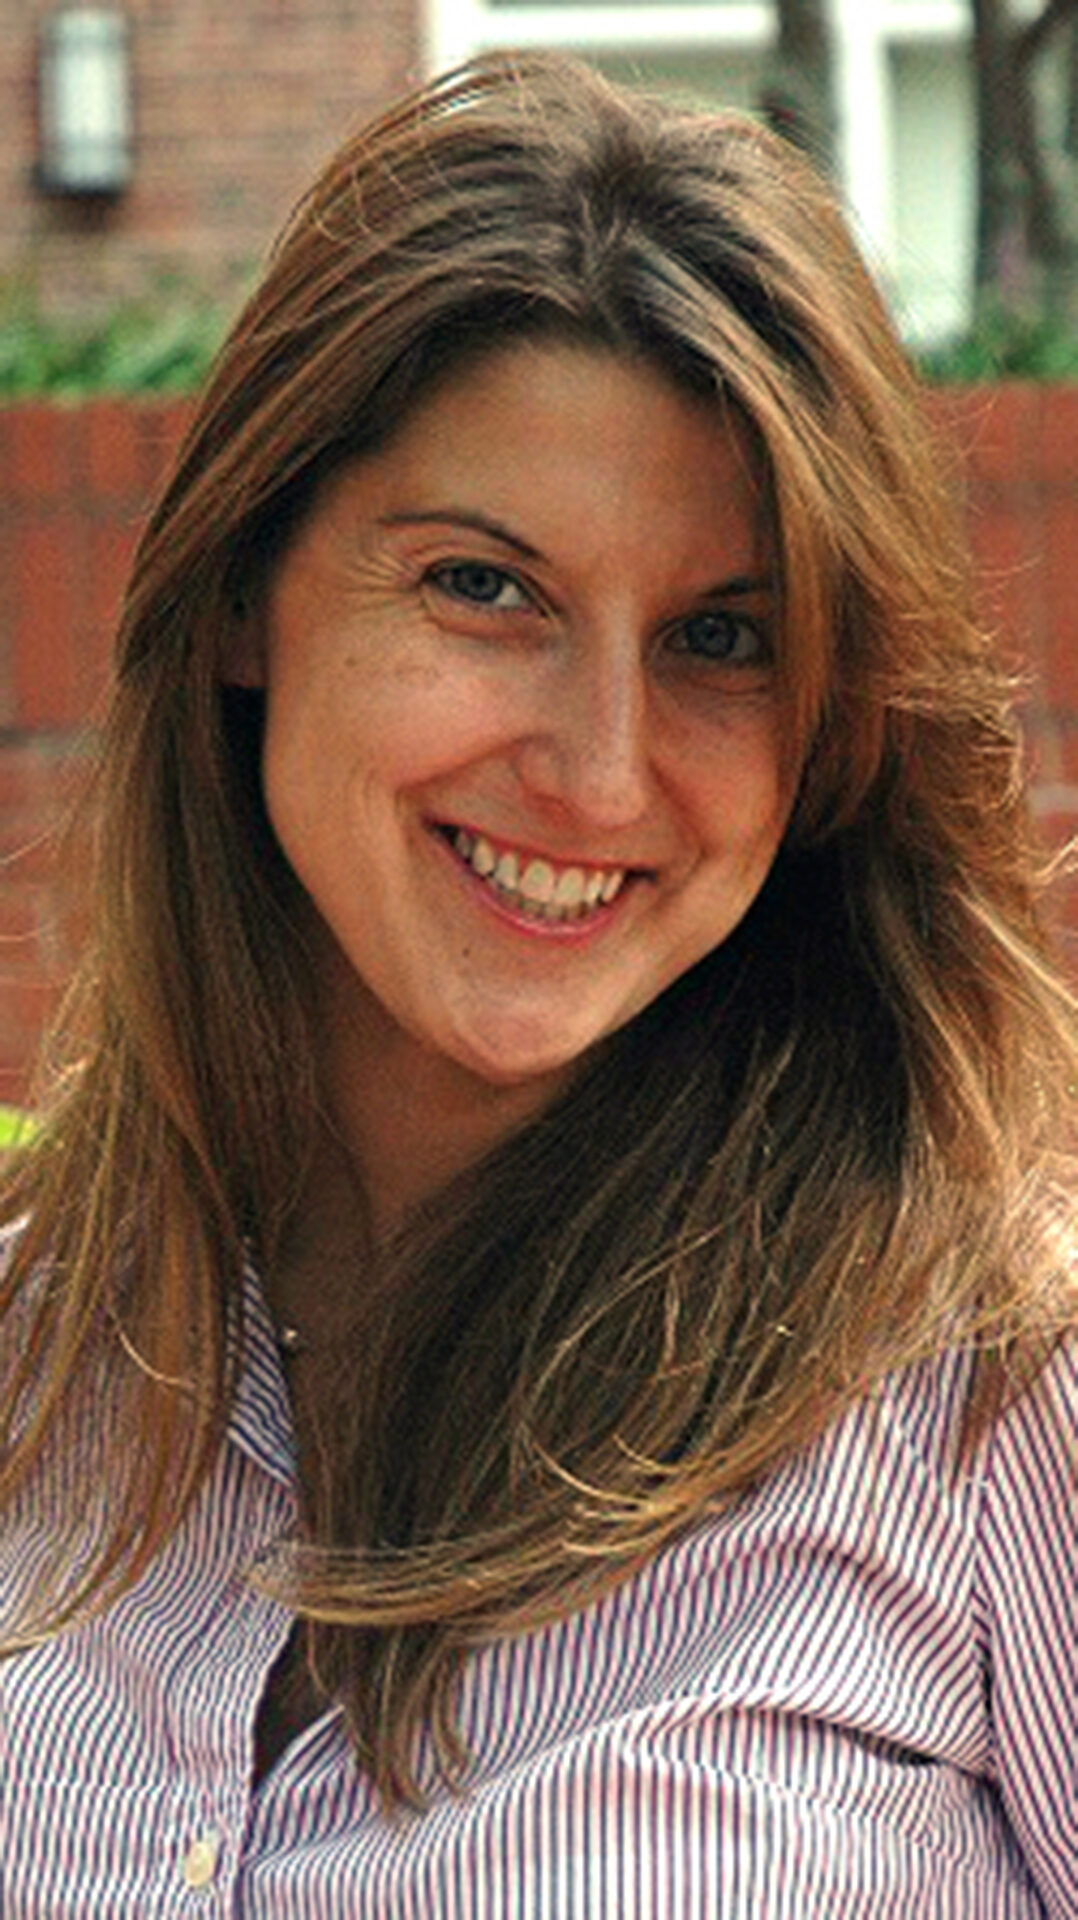 Julie Wronski